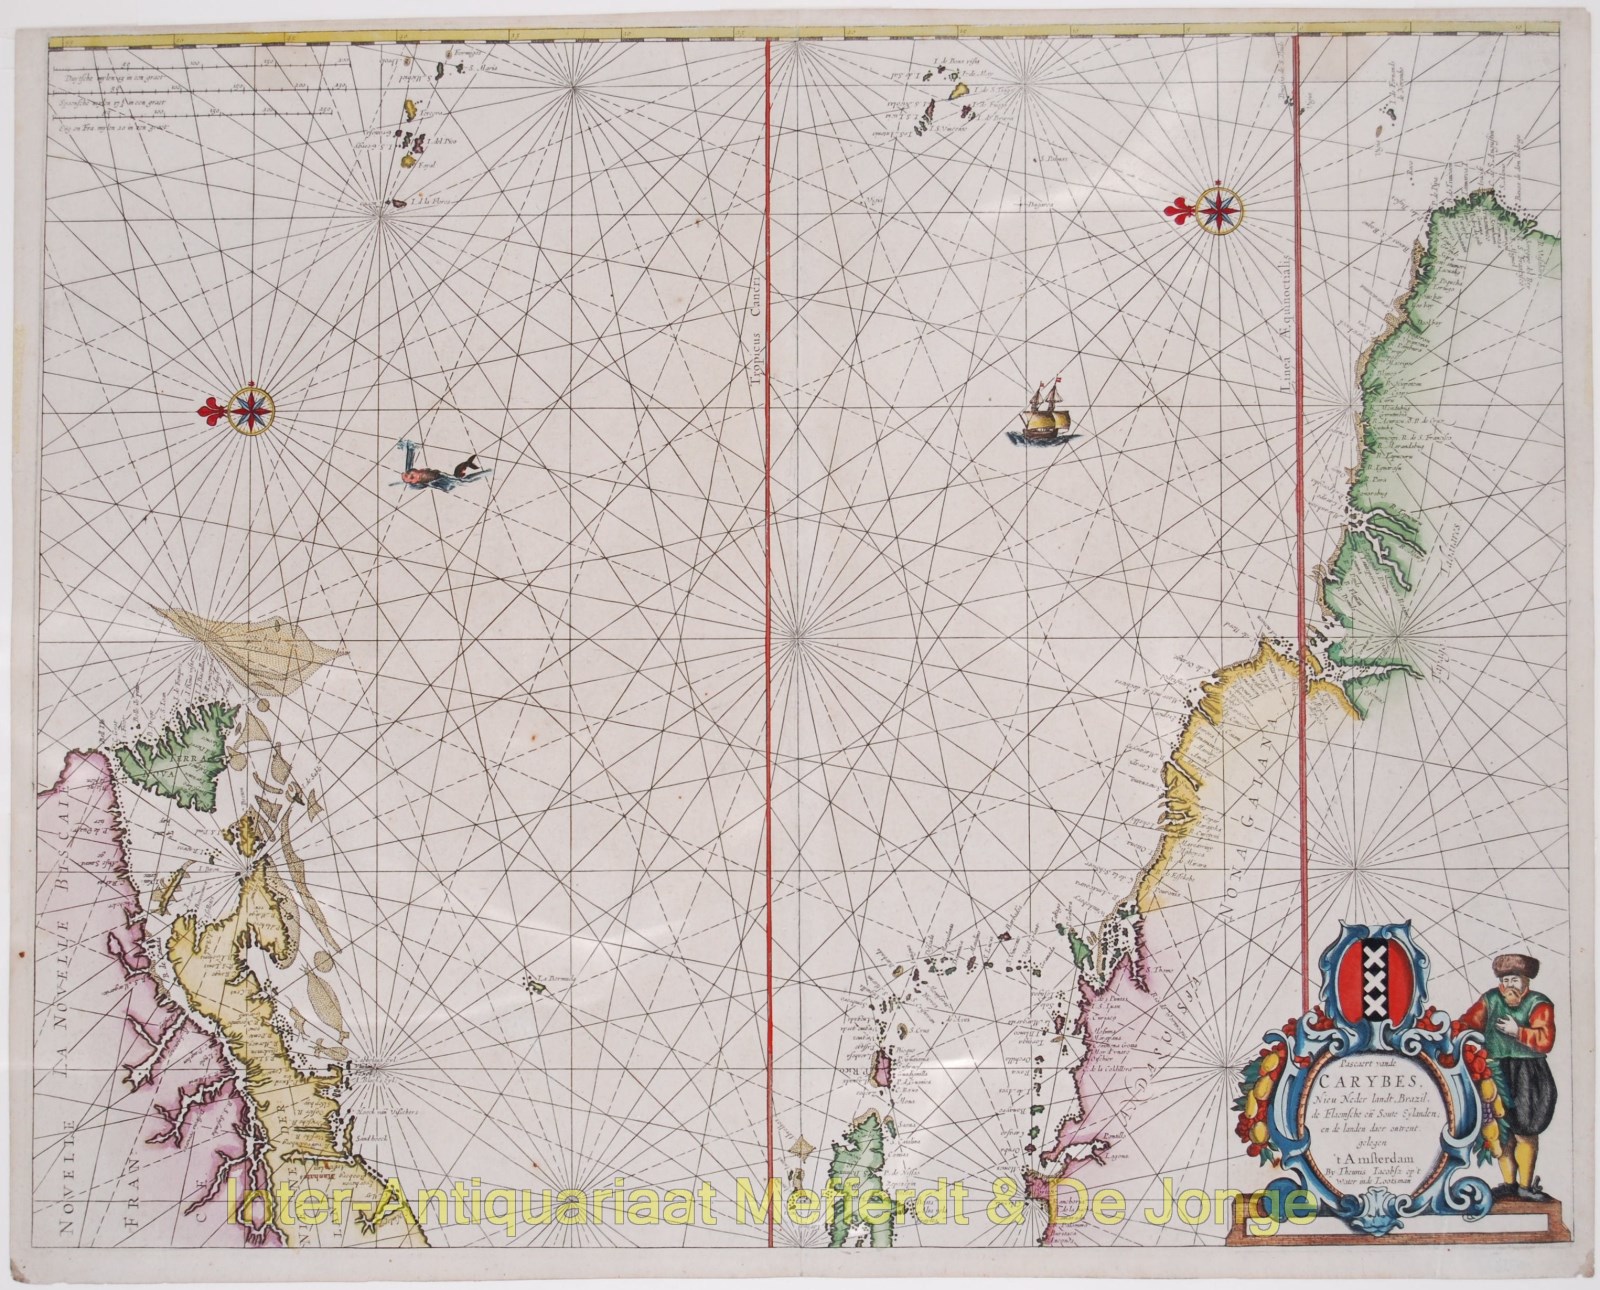 Lootsman-- Theunis Jacobsz - Americas, Caribbean sea chart - Theunis Jacobsz Lootsman, 1650